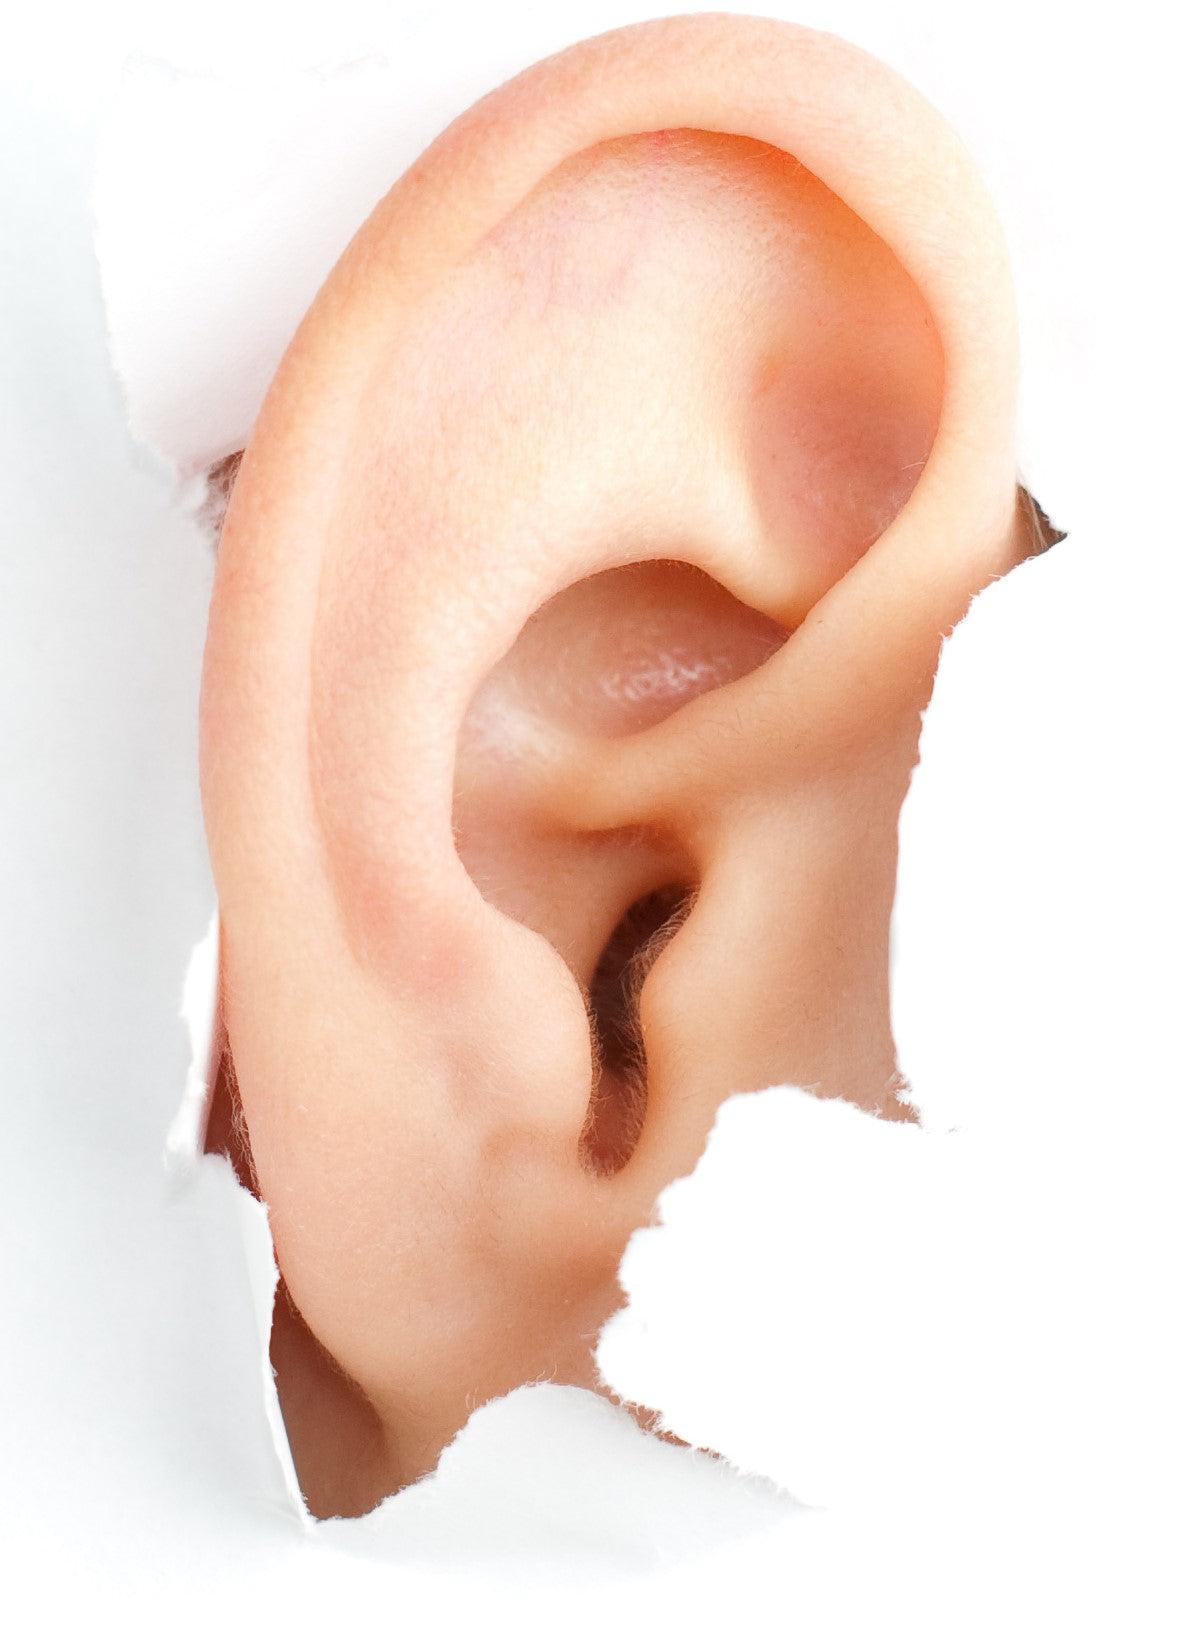 dandruff in the ear